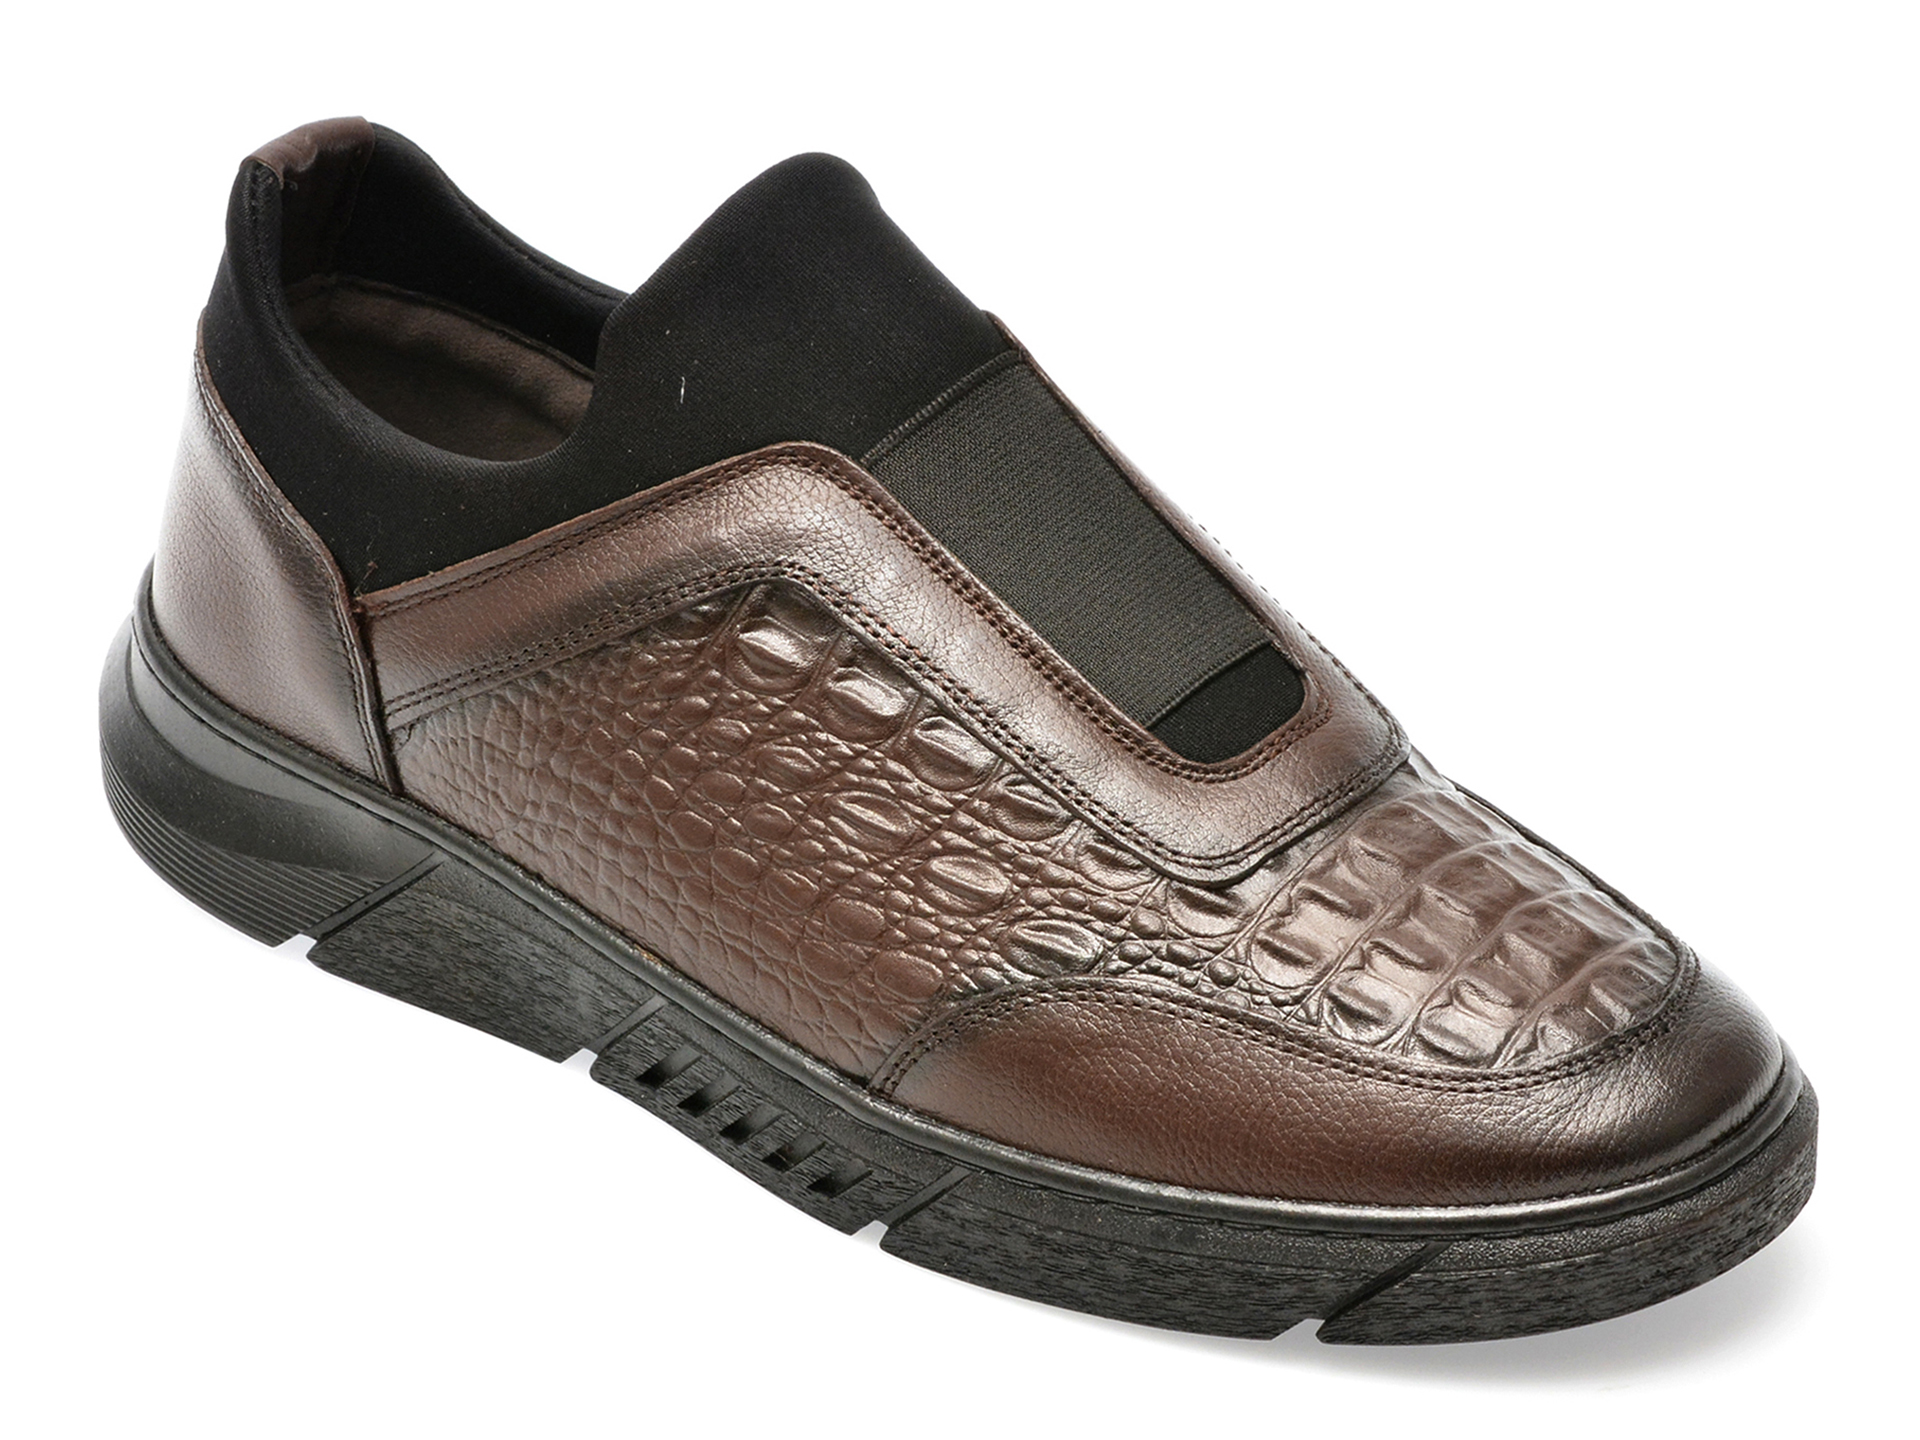 Pantofi AXXELLL maro, ER800, din piele naturala /barbati/pantofi